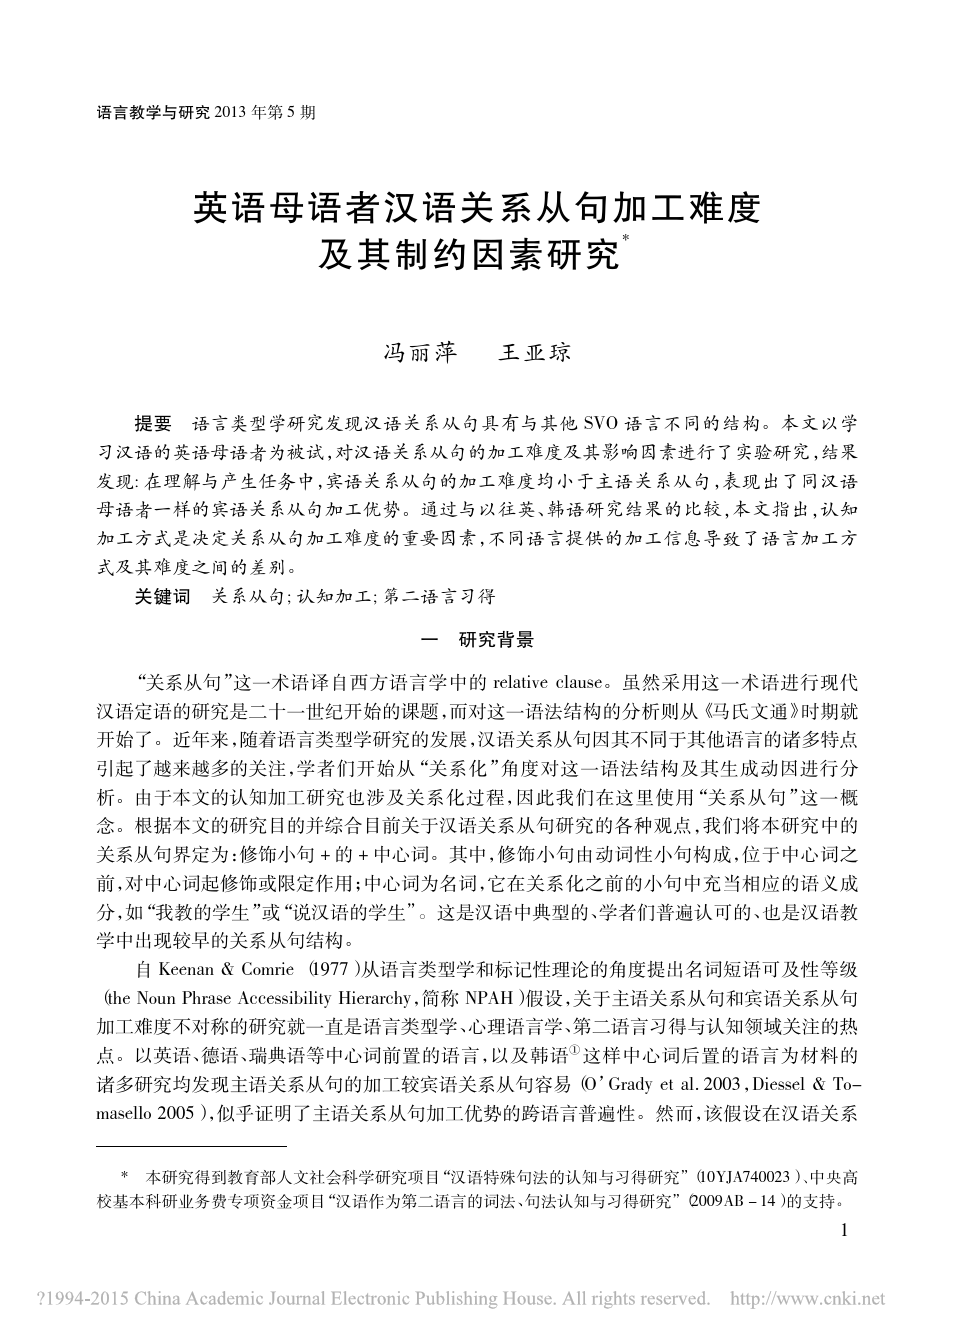 英语母语者汉语关系从句加工难度及其制约因素研究_冯丽萍、王亚琼